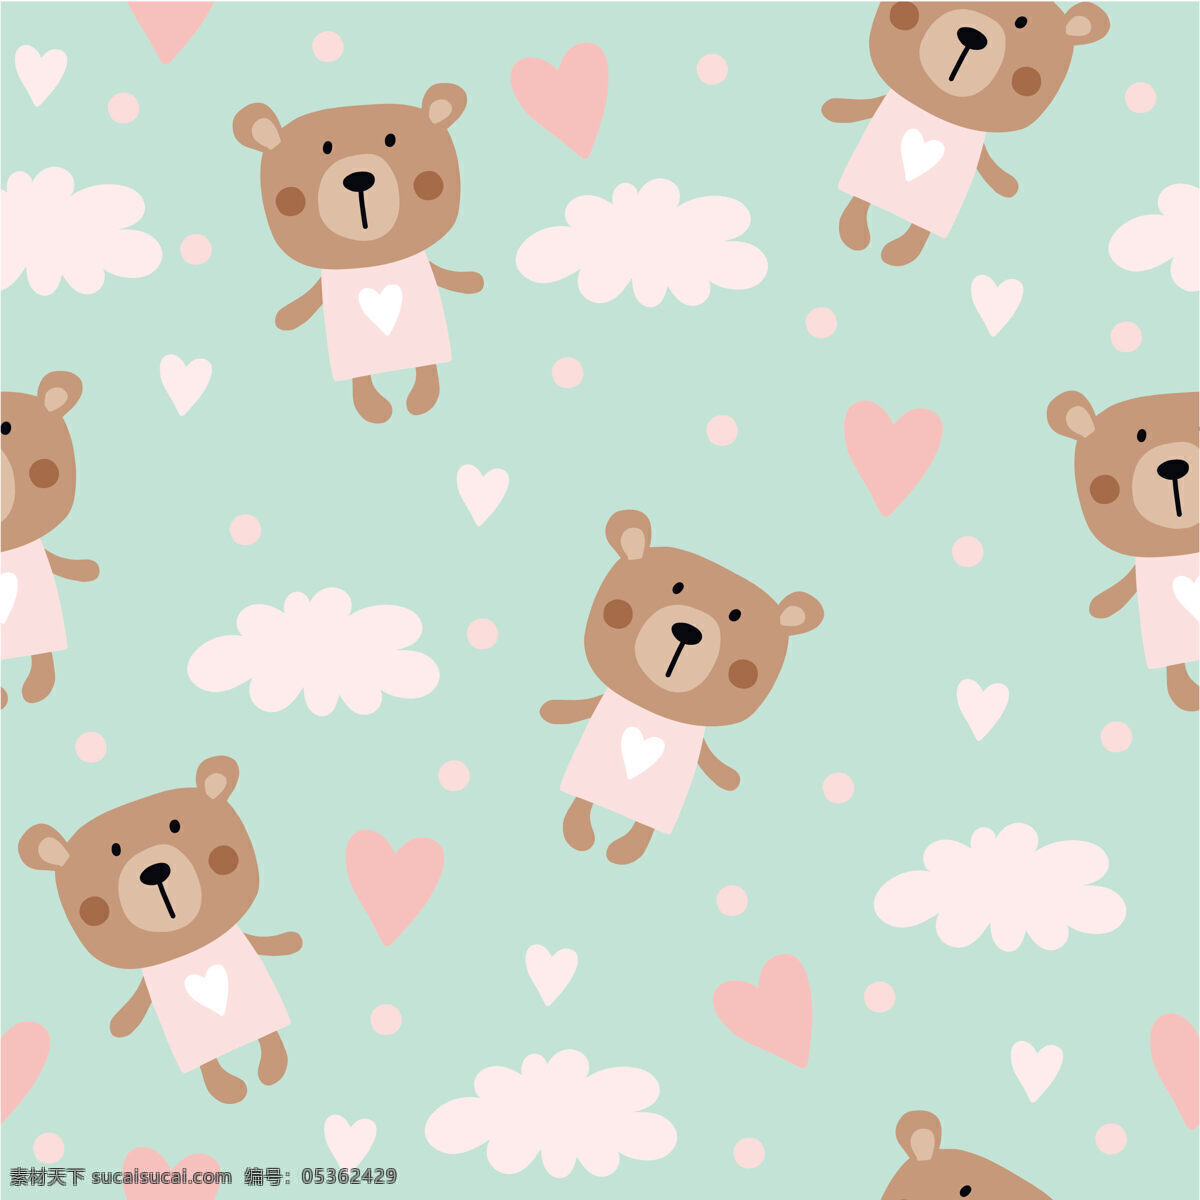 清新 蓝 粉色 调 小 熊 壁纸 图案 装饰设计 粉色白云 壁纸图案 褐色小熊 粉色爱心